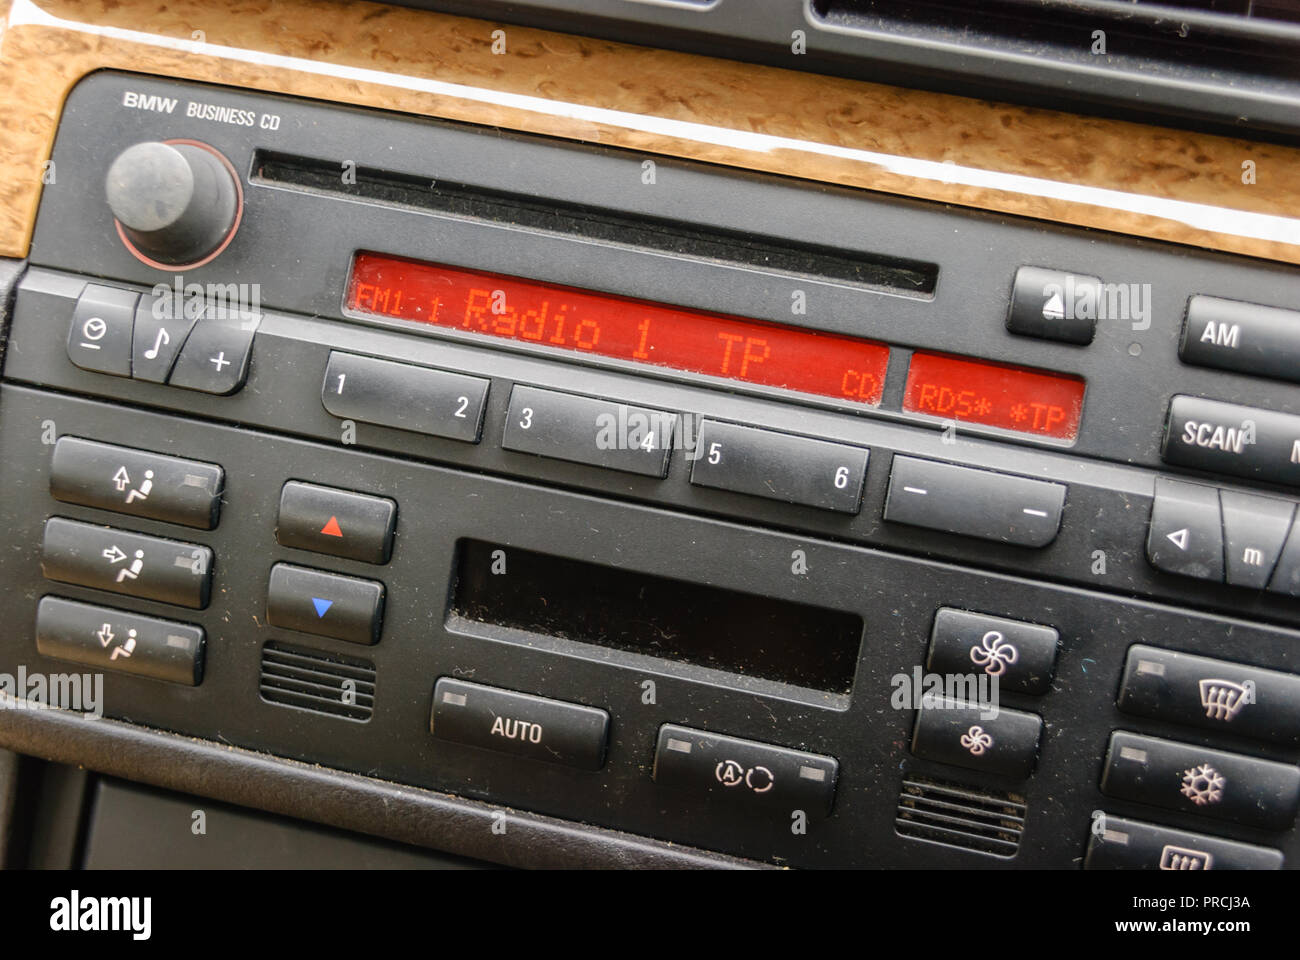 Dusty radio in a 2007 BMW 318i Stock Photo - Alamy